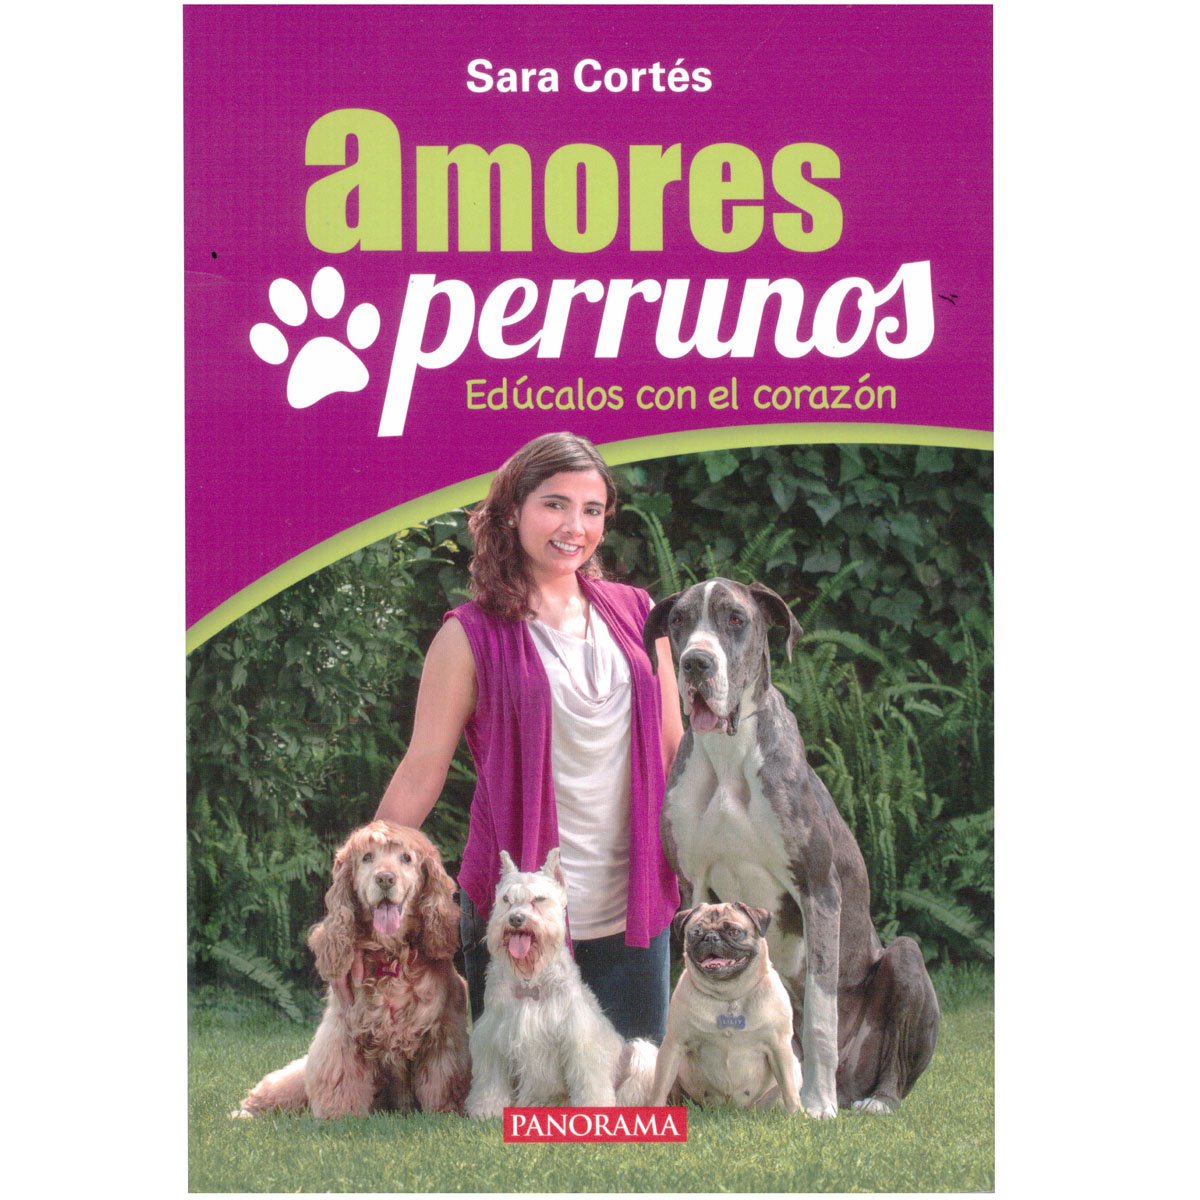 Amores Perrunos, Sara Cortés. Panorama